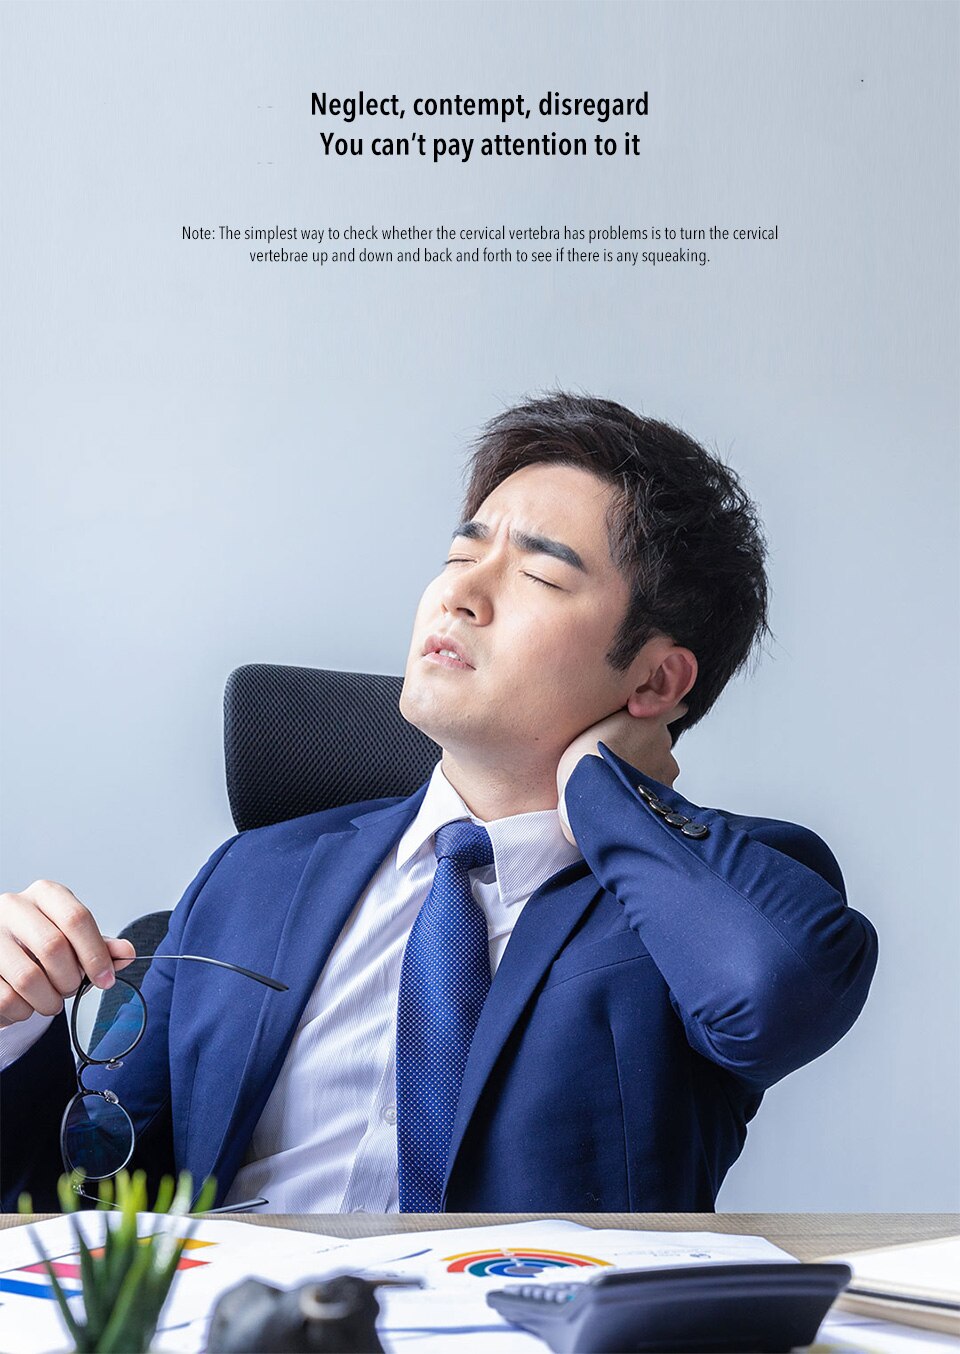 Electric neck massager Xiaomi Jeeback Neck Massager G2…